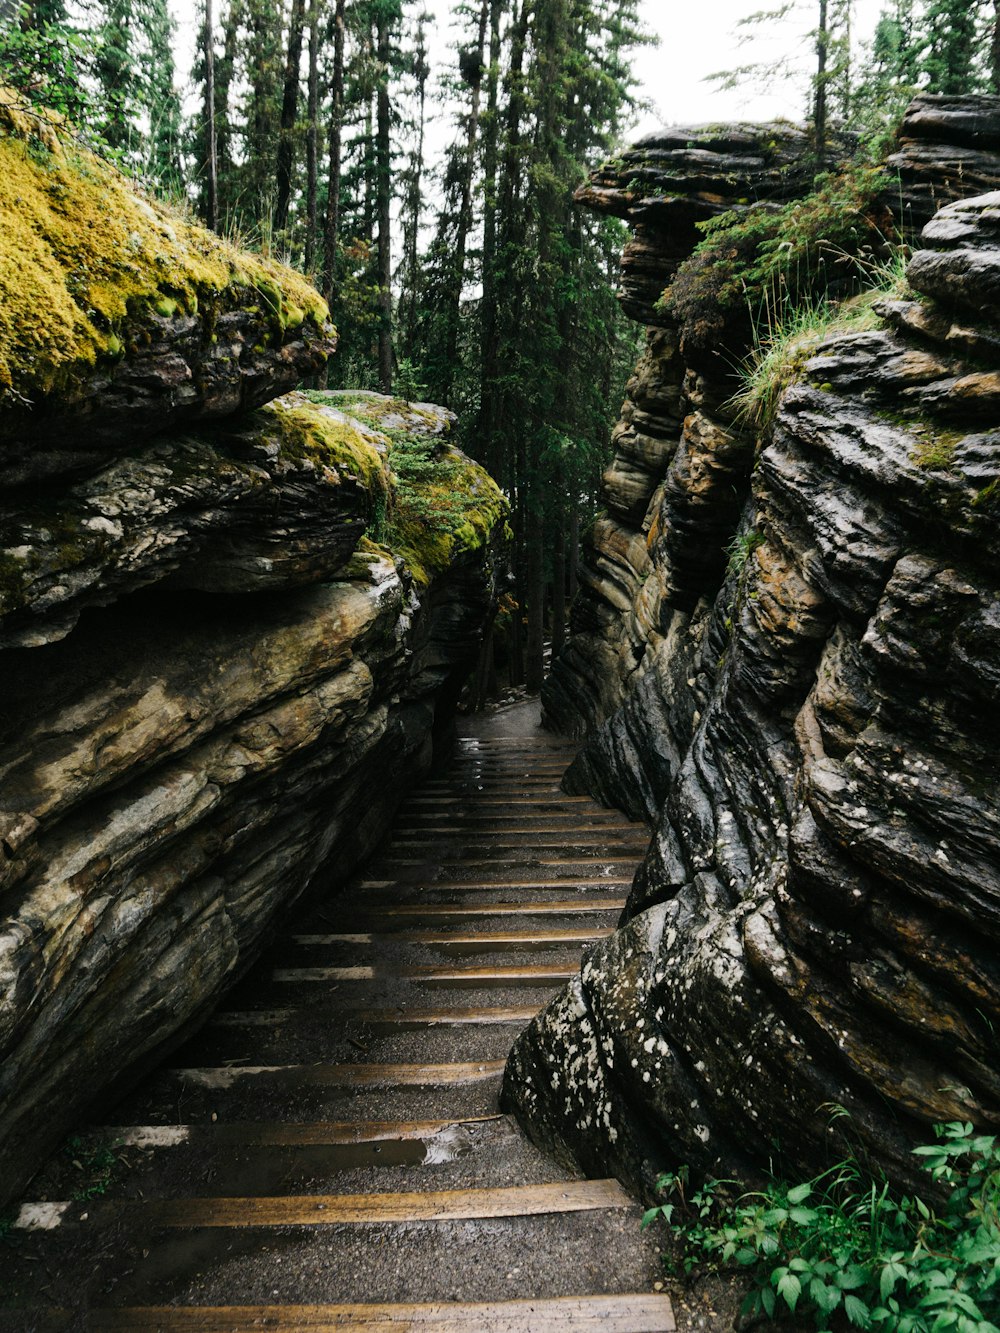 Sentier en bois brun entre des rochers recouverts de mousse verte